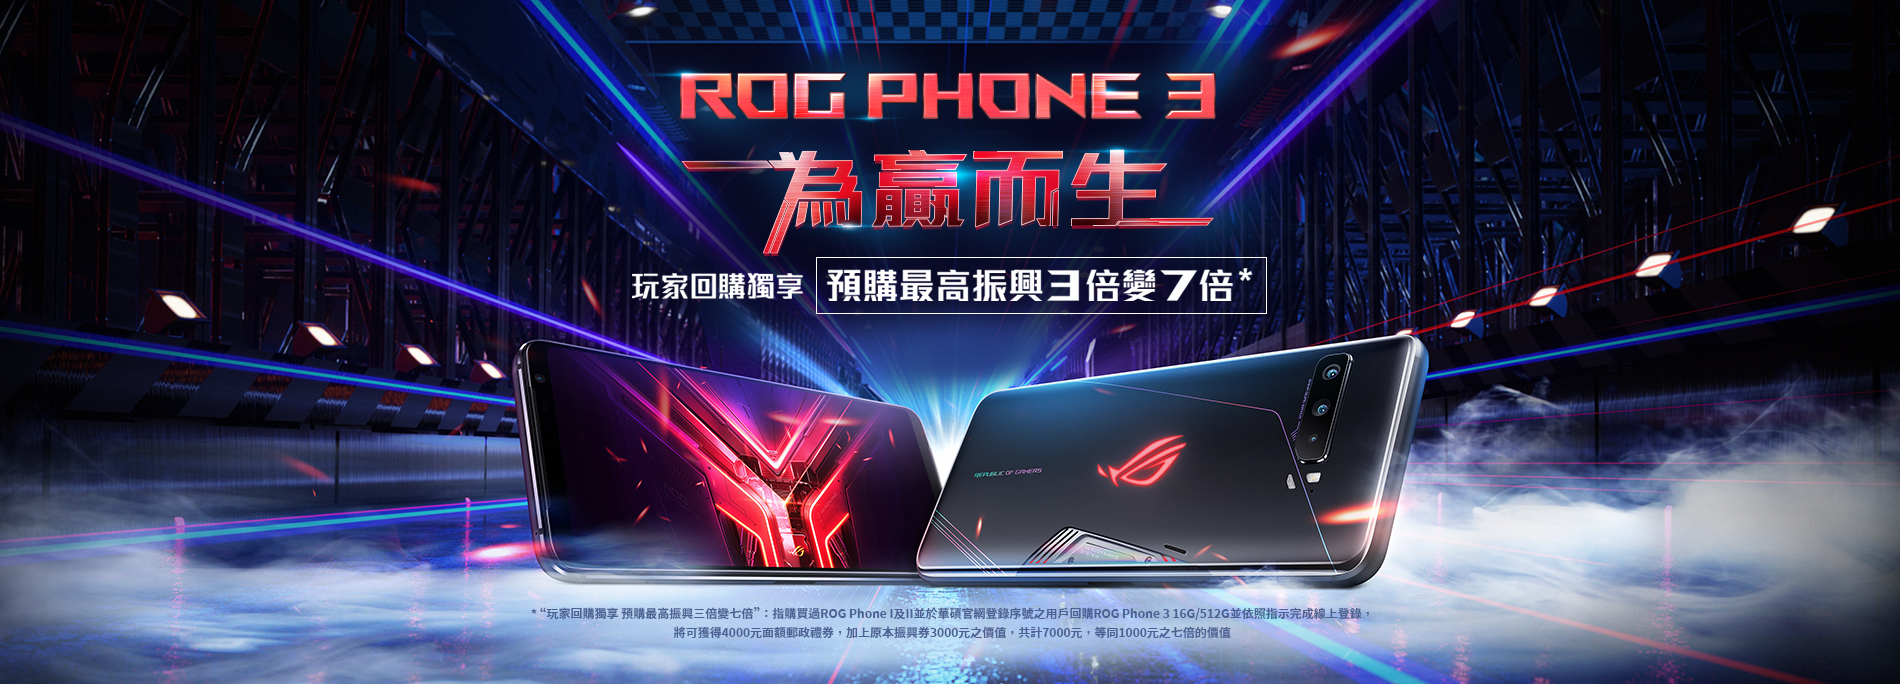 華碩玩家回購獨享 預購ROG Phone 3享最高振興三倍變七倍